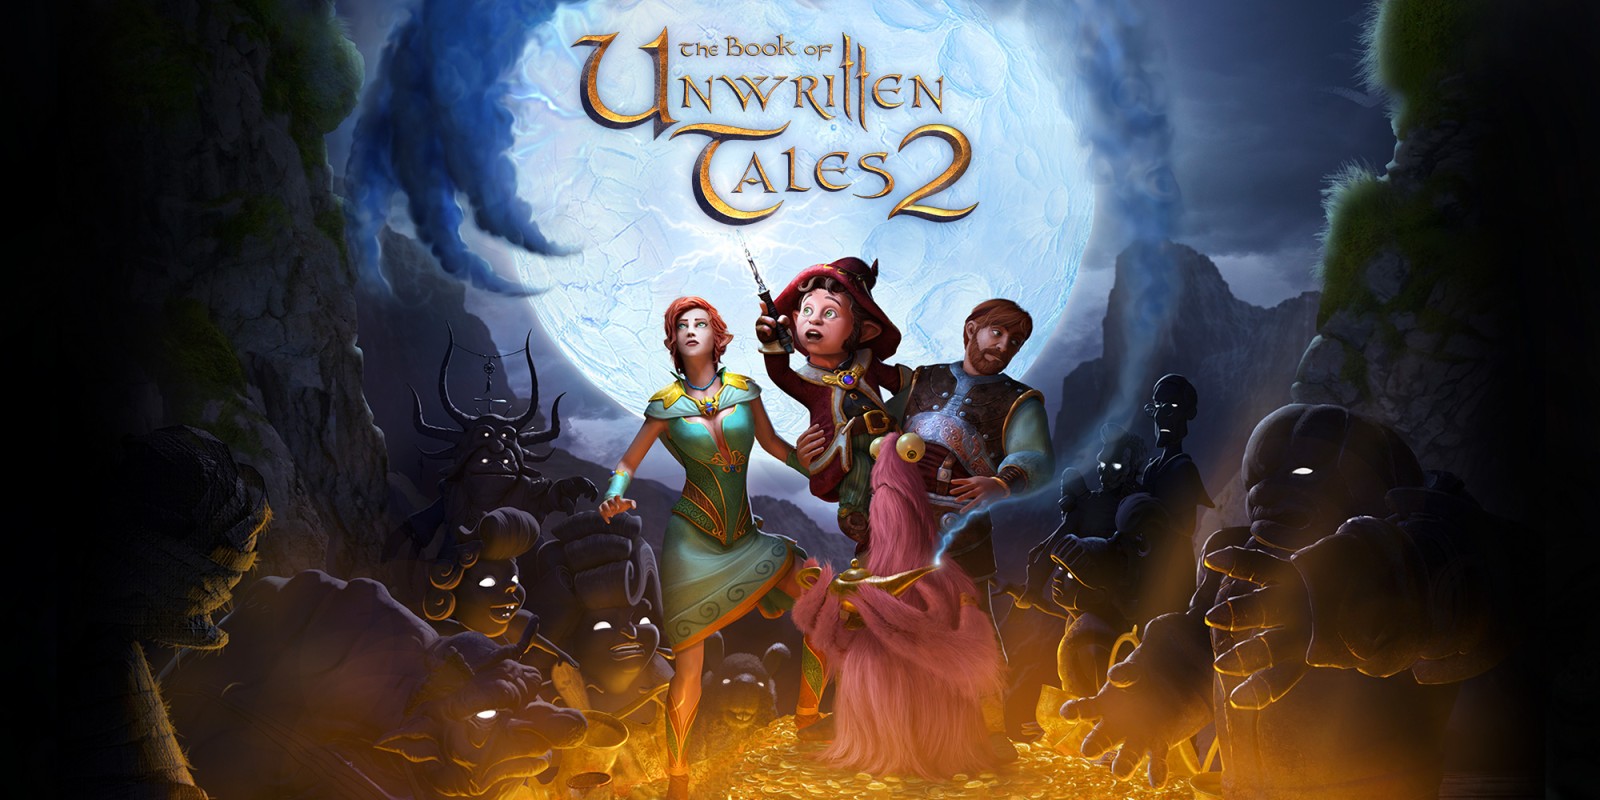 The book of unwritten tales 2 punta e clicca gioco puzzles enigma avventura fantasy nintendo switch